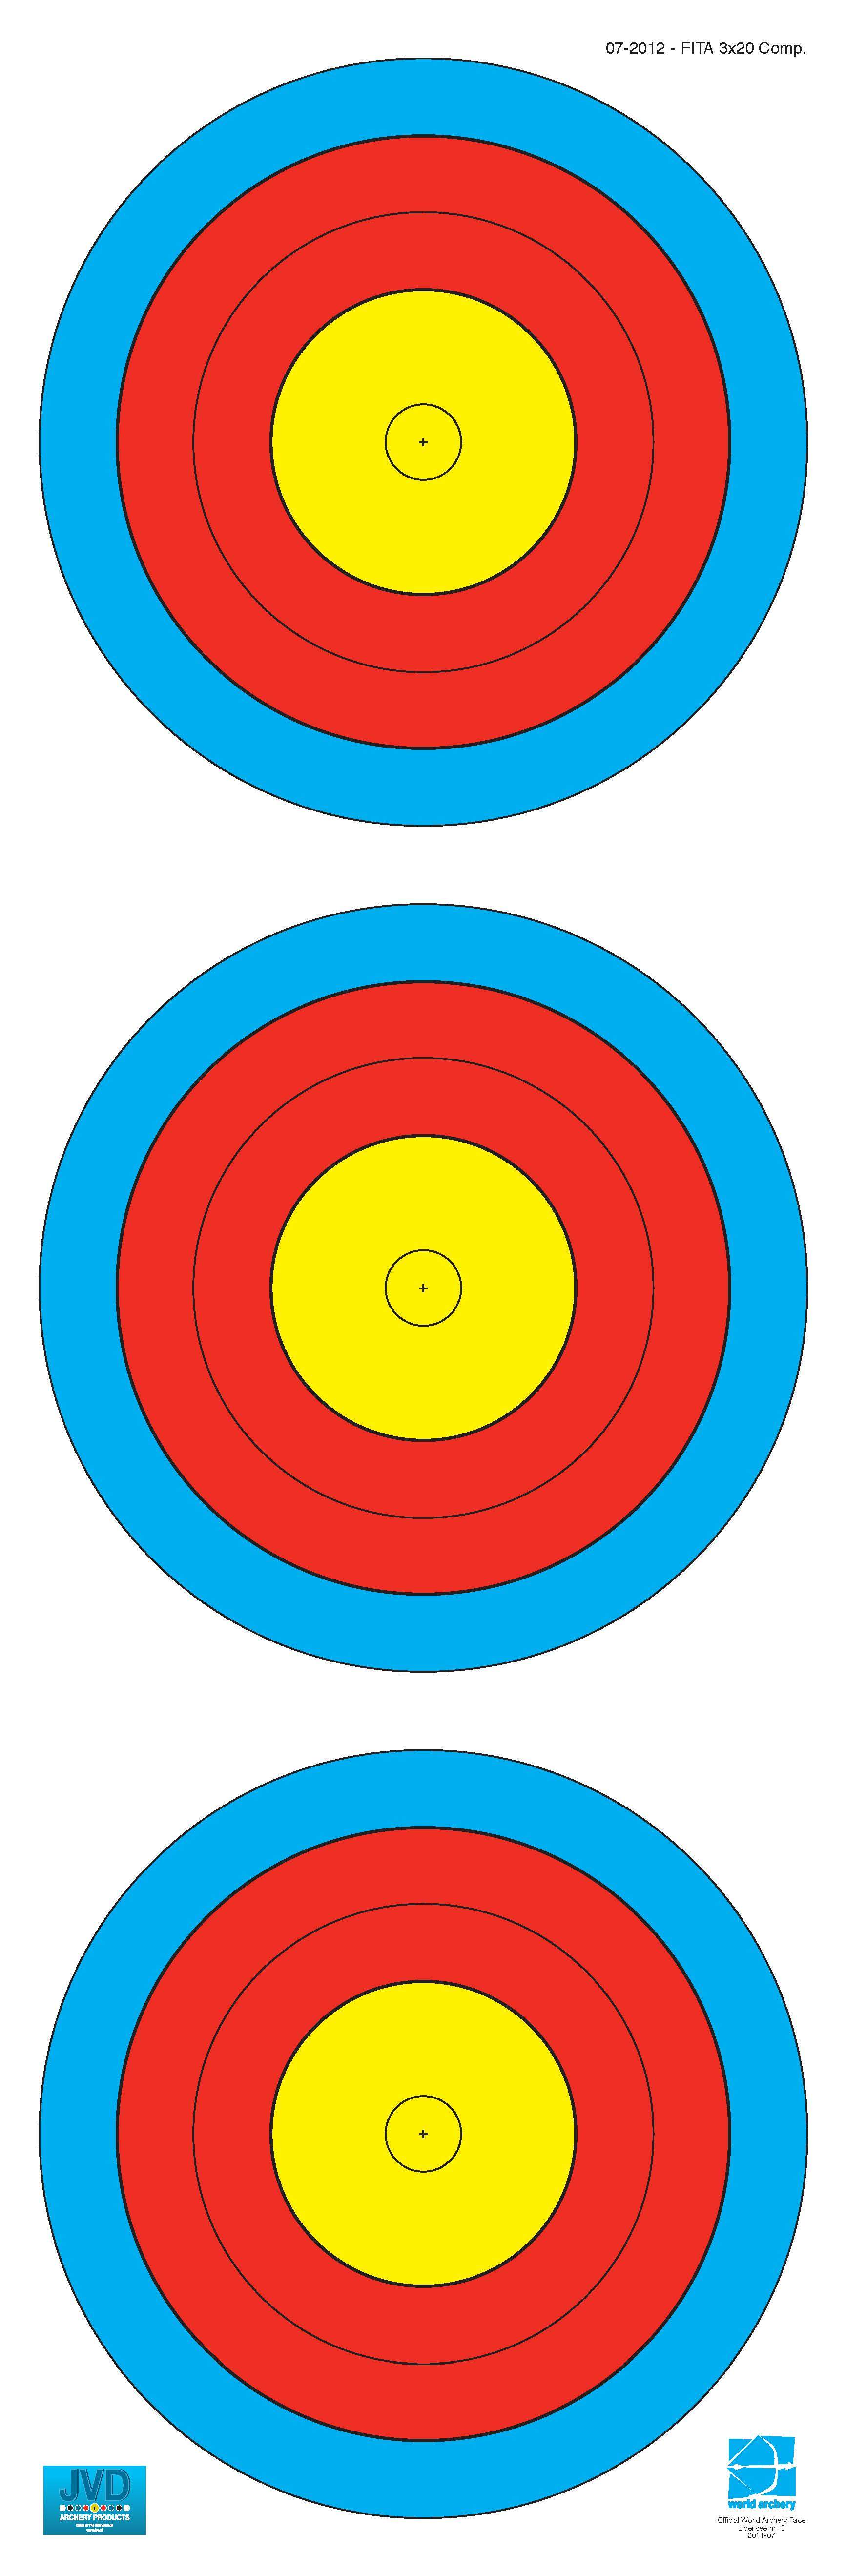 World Archery Federation (WA) - 3x20 Scheibenauflage, Scheibenauflage - est-bogensport.de